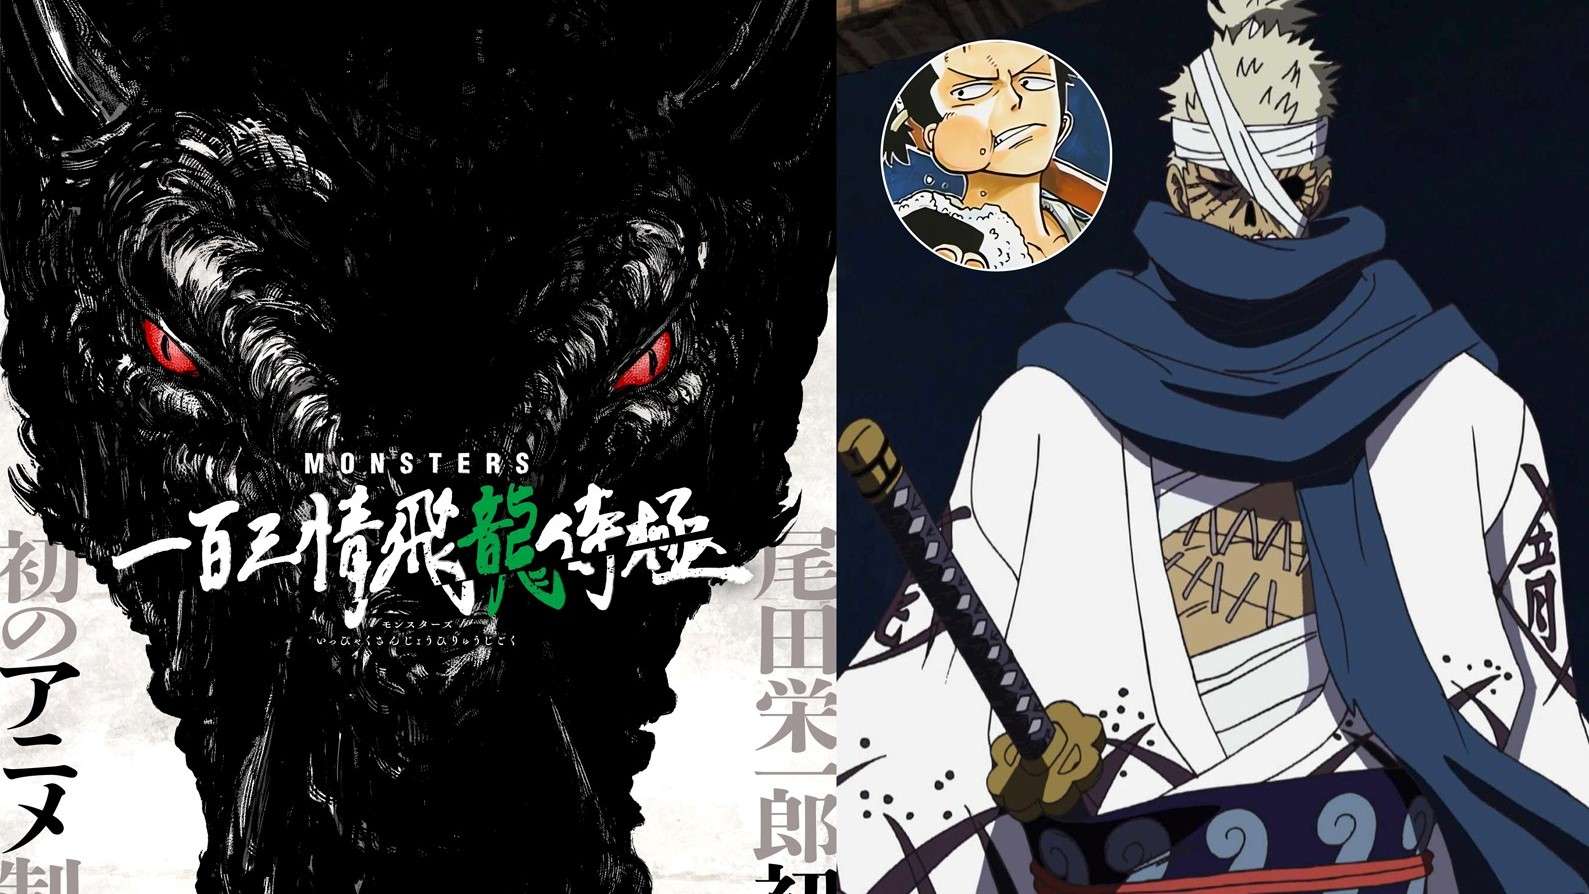 Ngoại truyện ngắn về đại kiếm sĩ Ryuma mang tên Monsters của tác giả Oda sẽ được chuyển thể thành anime